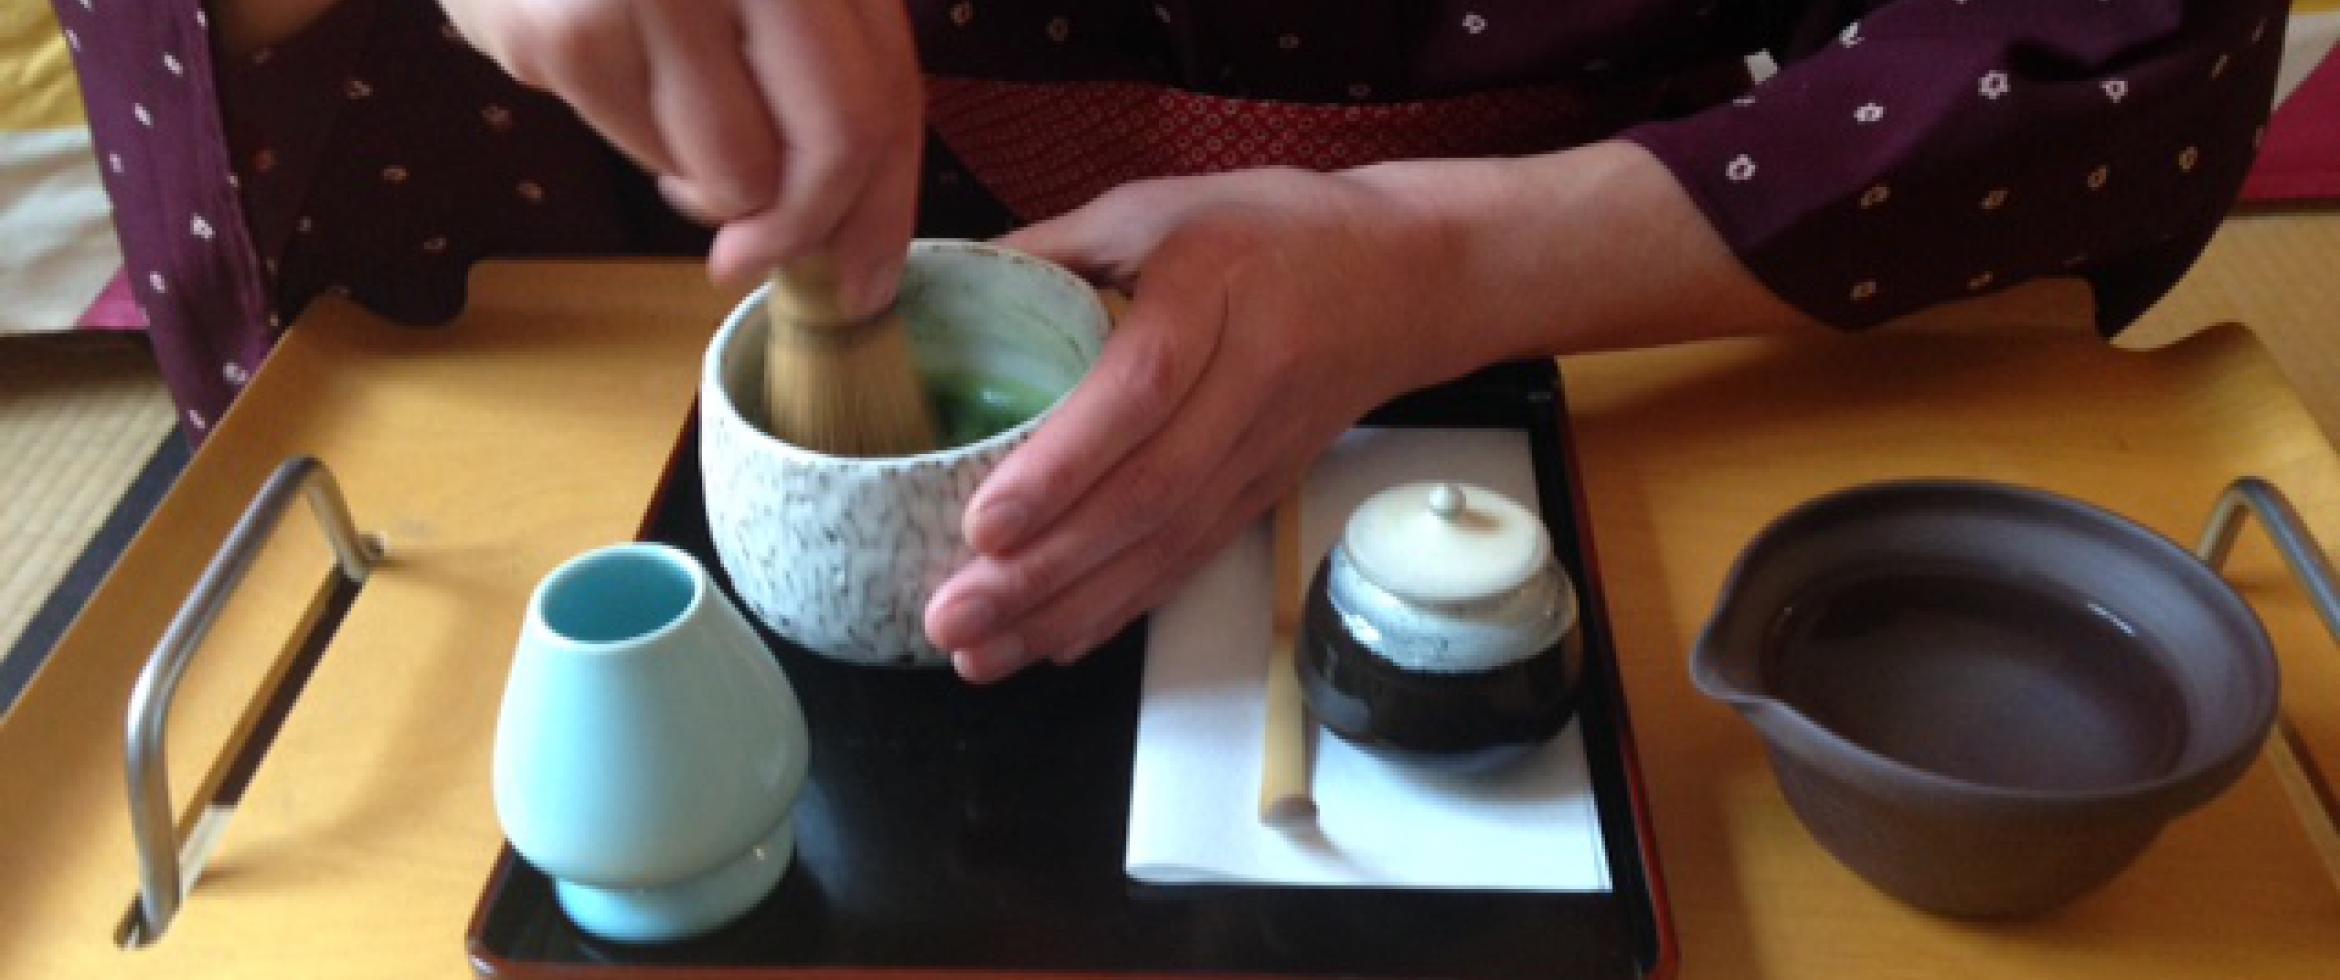 Préparation d'un thé vert japonais Matcha : Chawan, Chasen